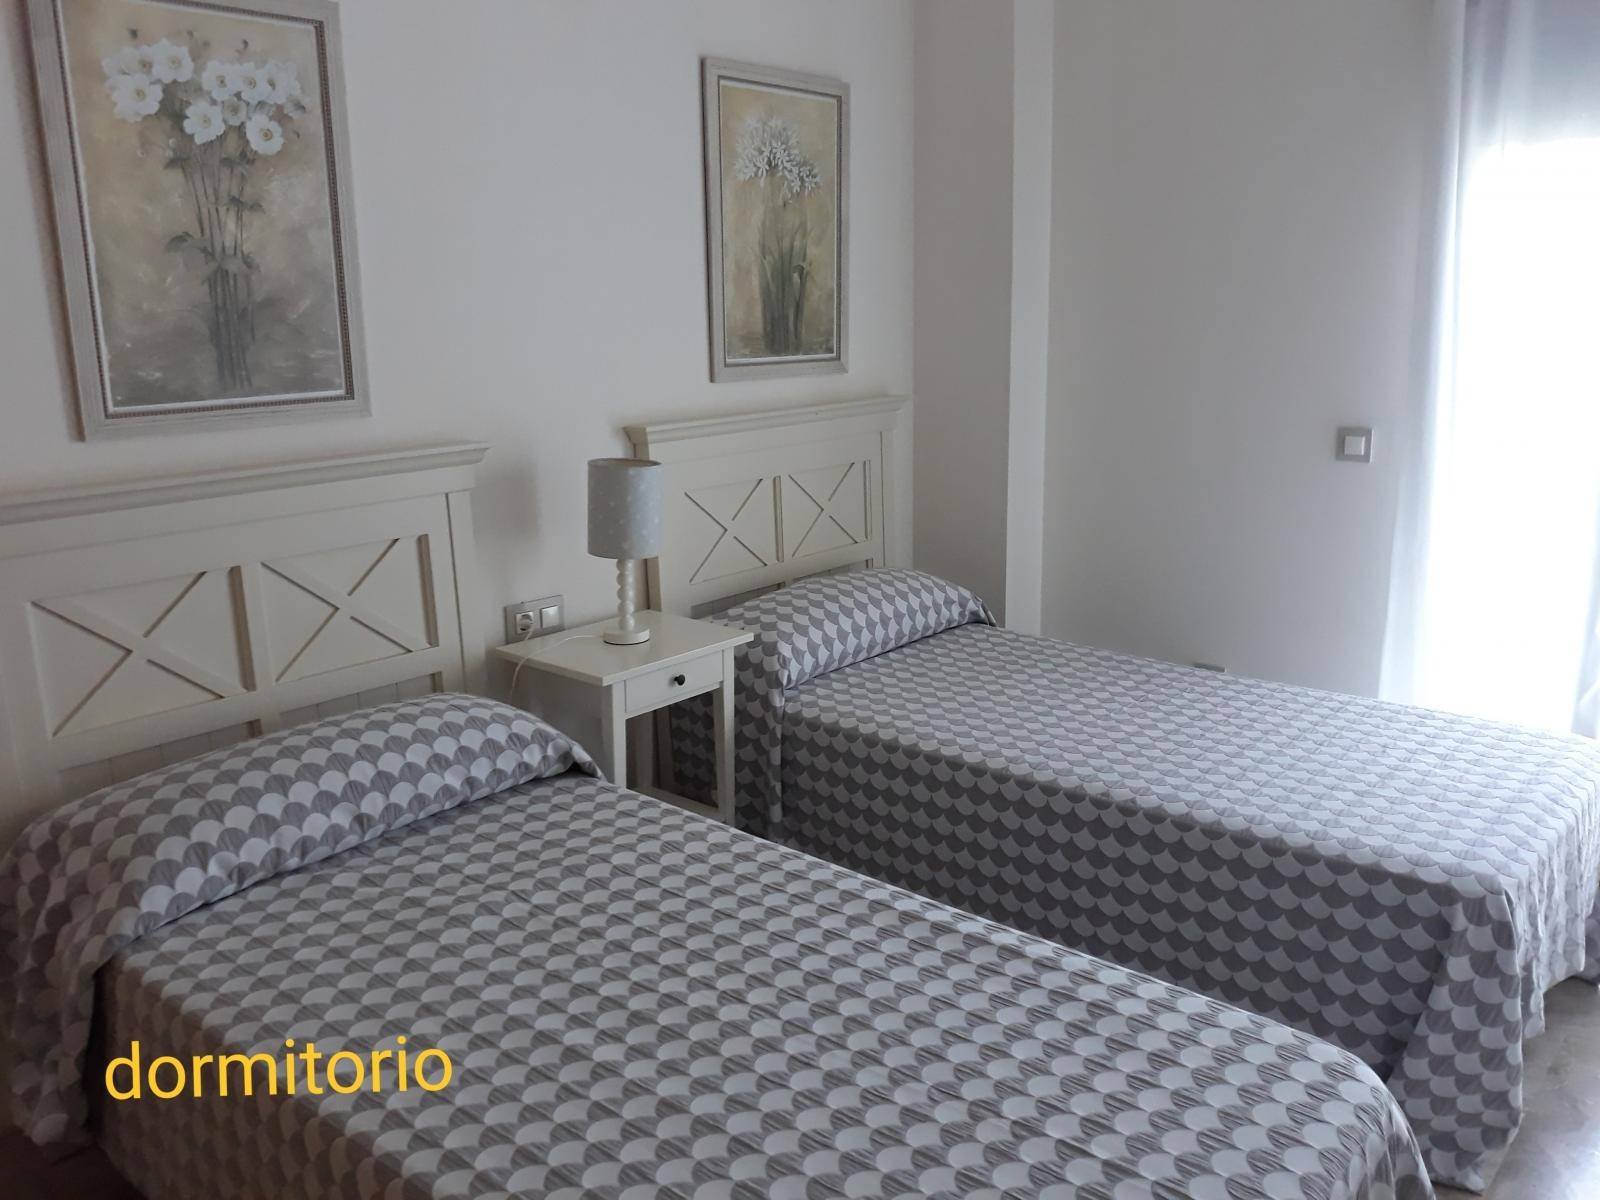 Se alquila piso de vacaciones de 2 dormitorios y 2 baños en Res. Mar Abierto de Costa Ballena con garaje y piscina y jardín comunitarios